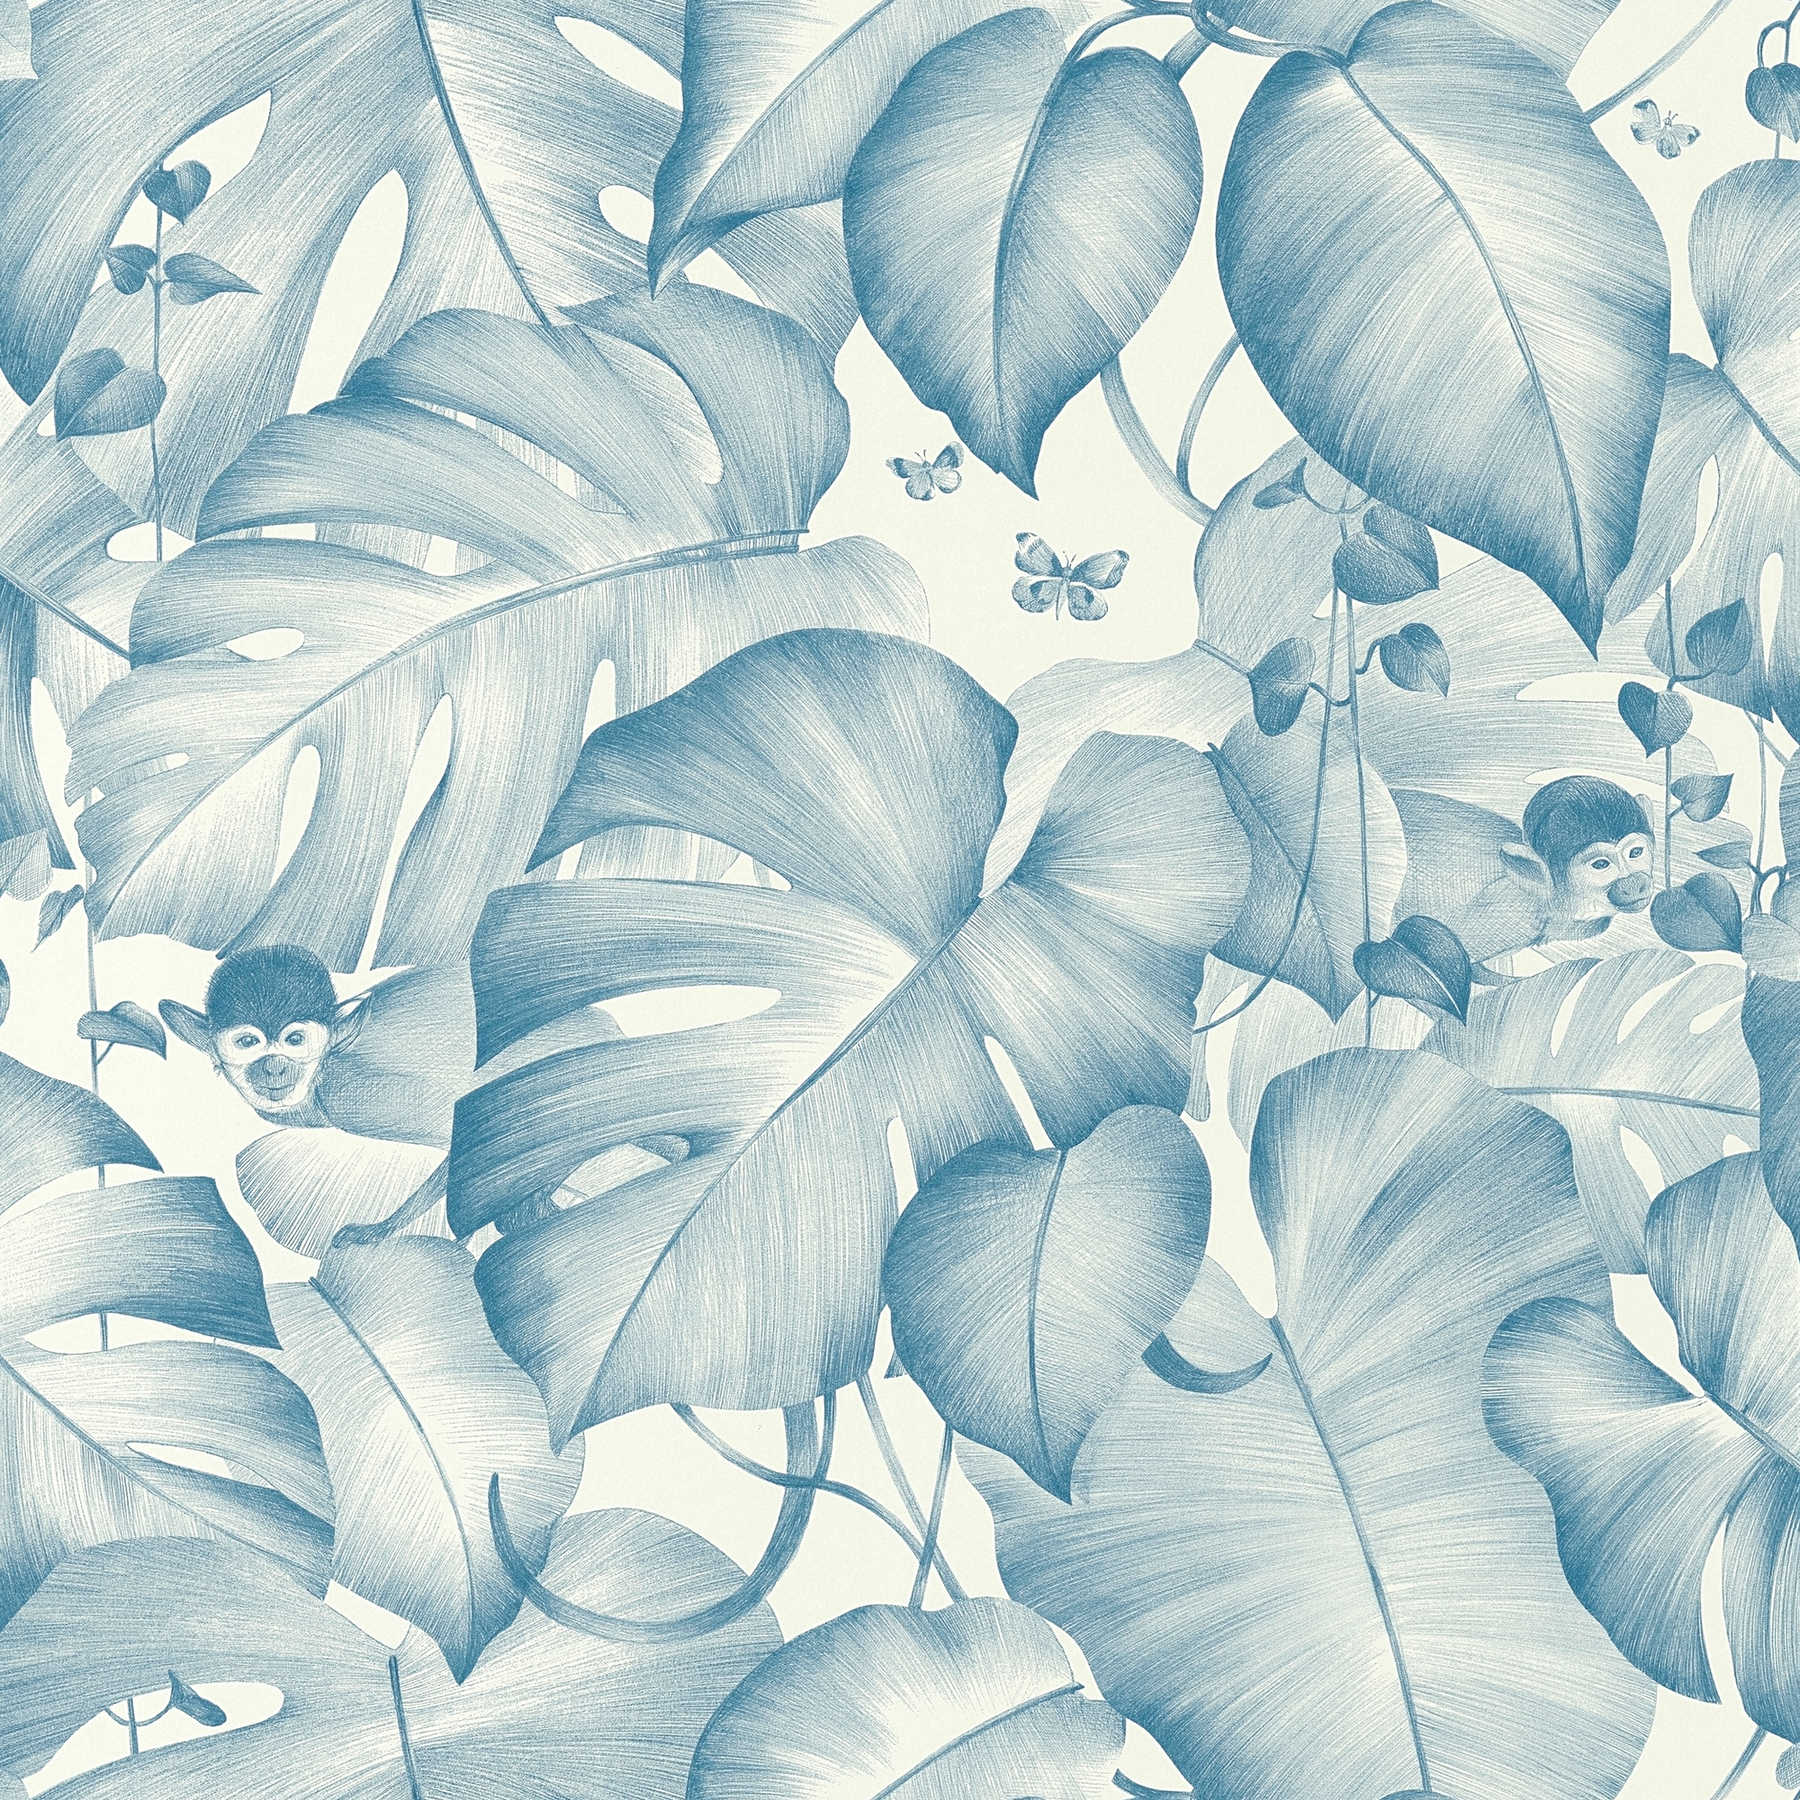         Dschungel Tapete Blättern & Äffchen – Blau, Weiß
    